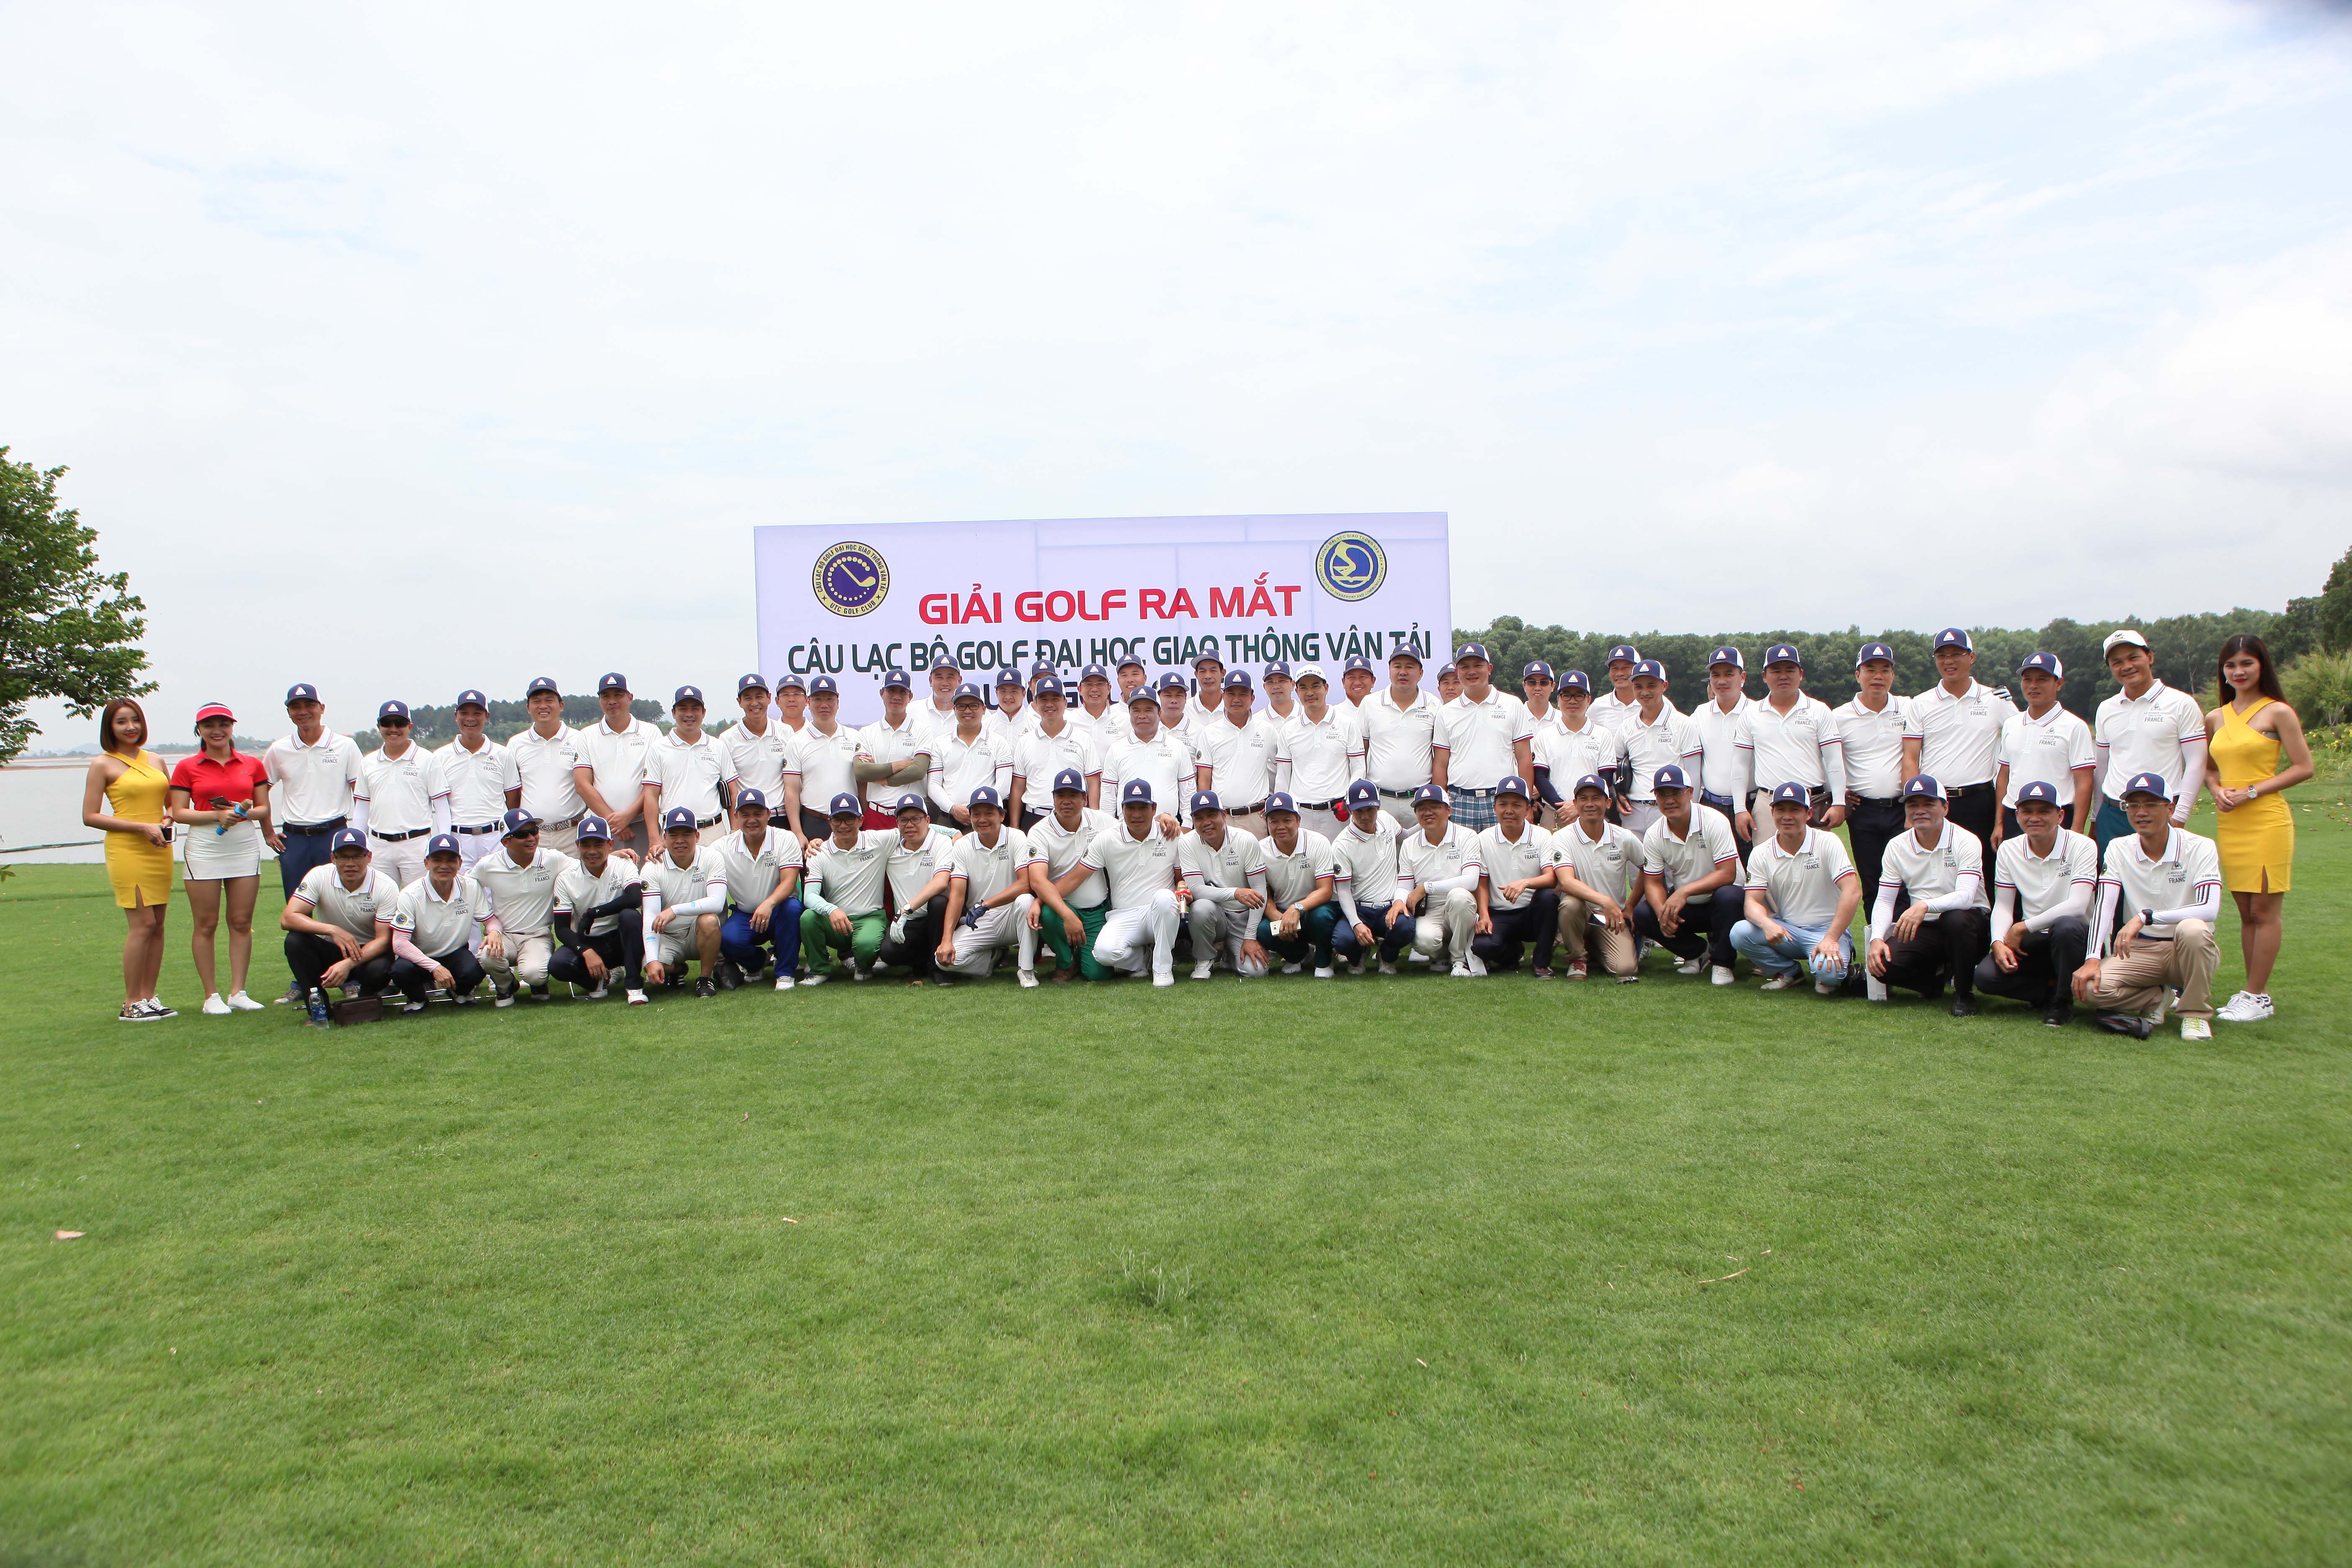 Giải golf ra mắt CLB Golf Đại học Giao thông Vận tải chính thức khởi tranh